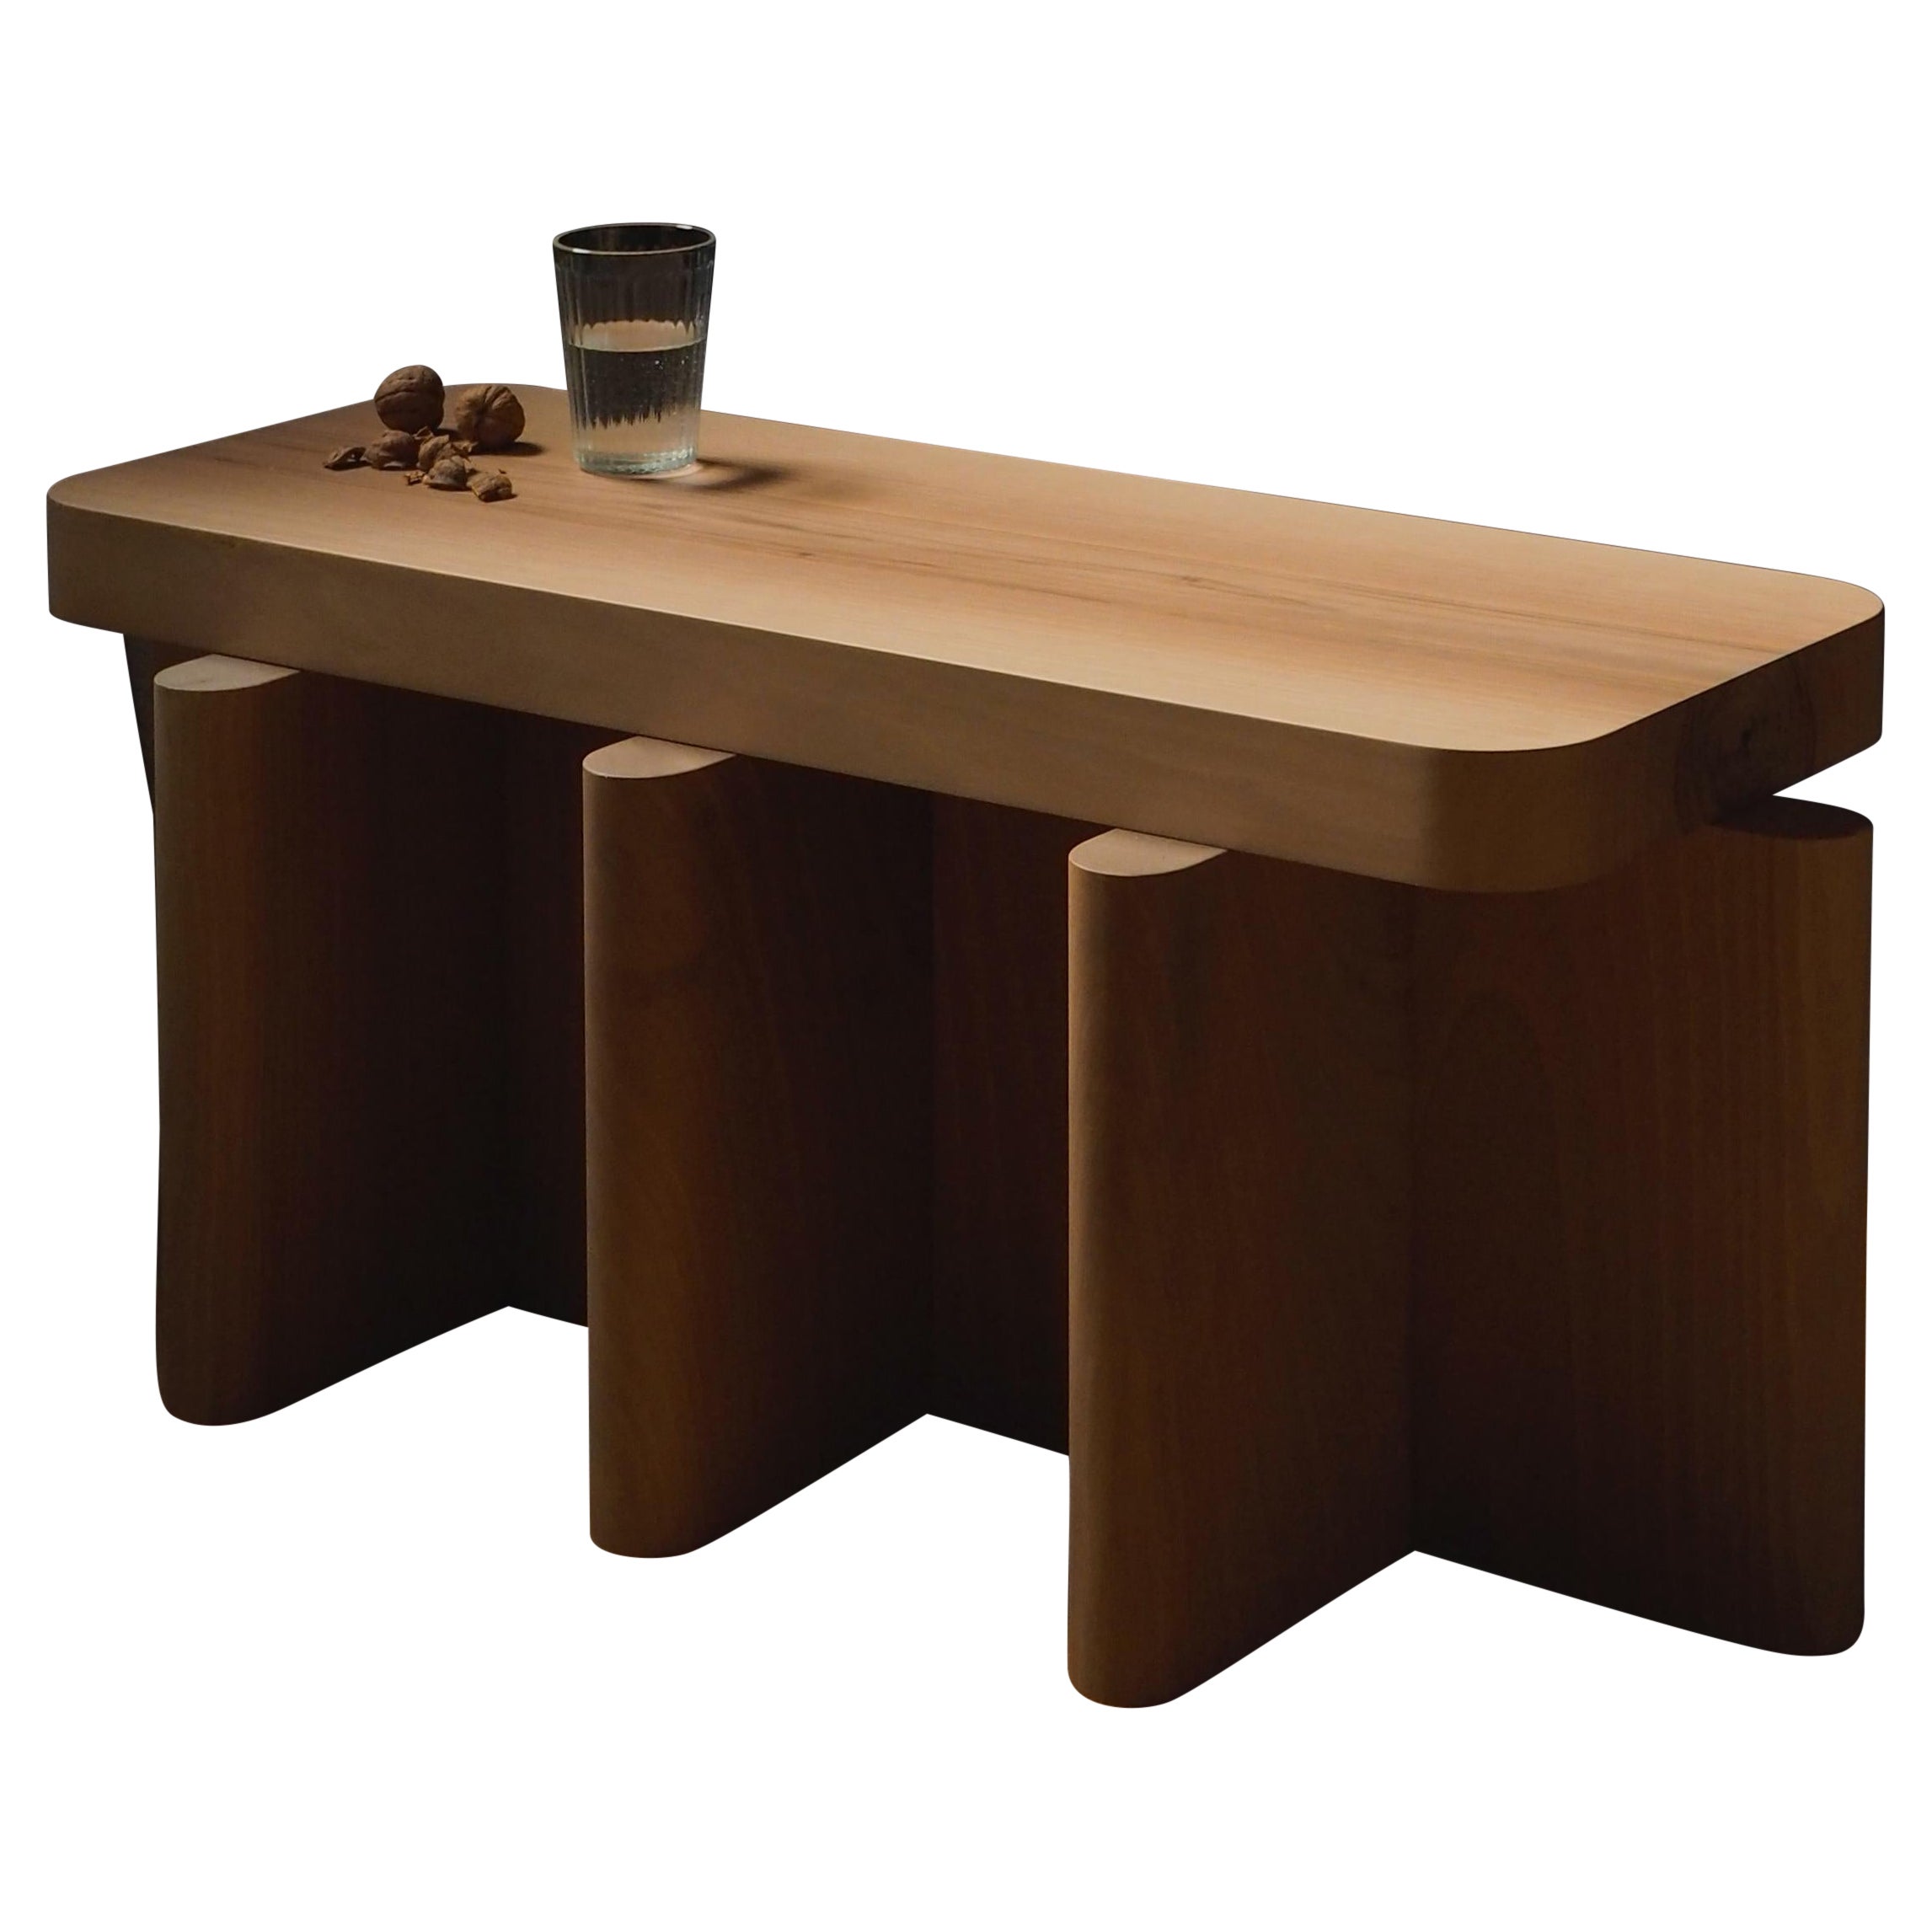 Spina est une collection de tables et de sièges laqués.

Les surfaces laquées et le rythme constant des plans créent un jeu visuel de lumière, d'ombre et de réflexion, ajoutant profondeur et richesse à cette collection déjà visuellement graphique.